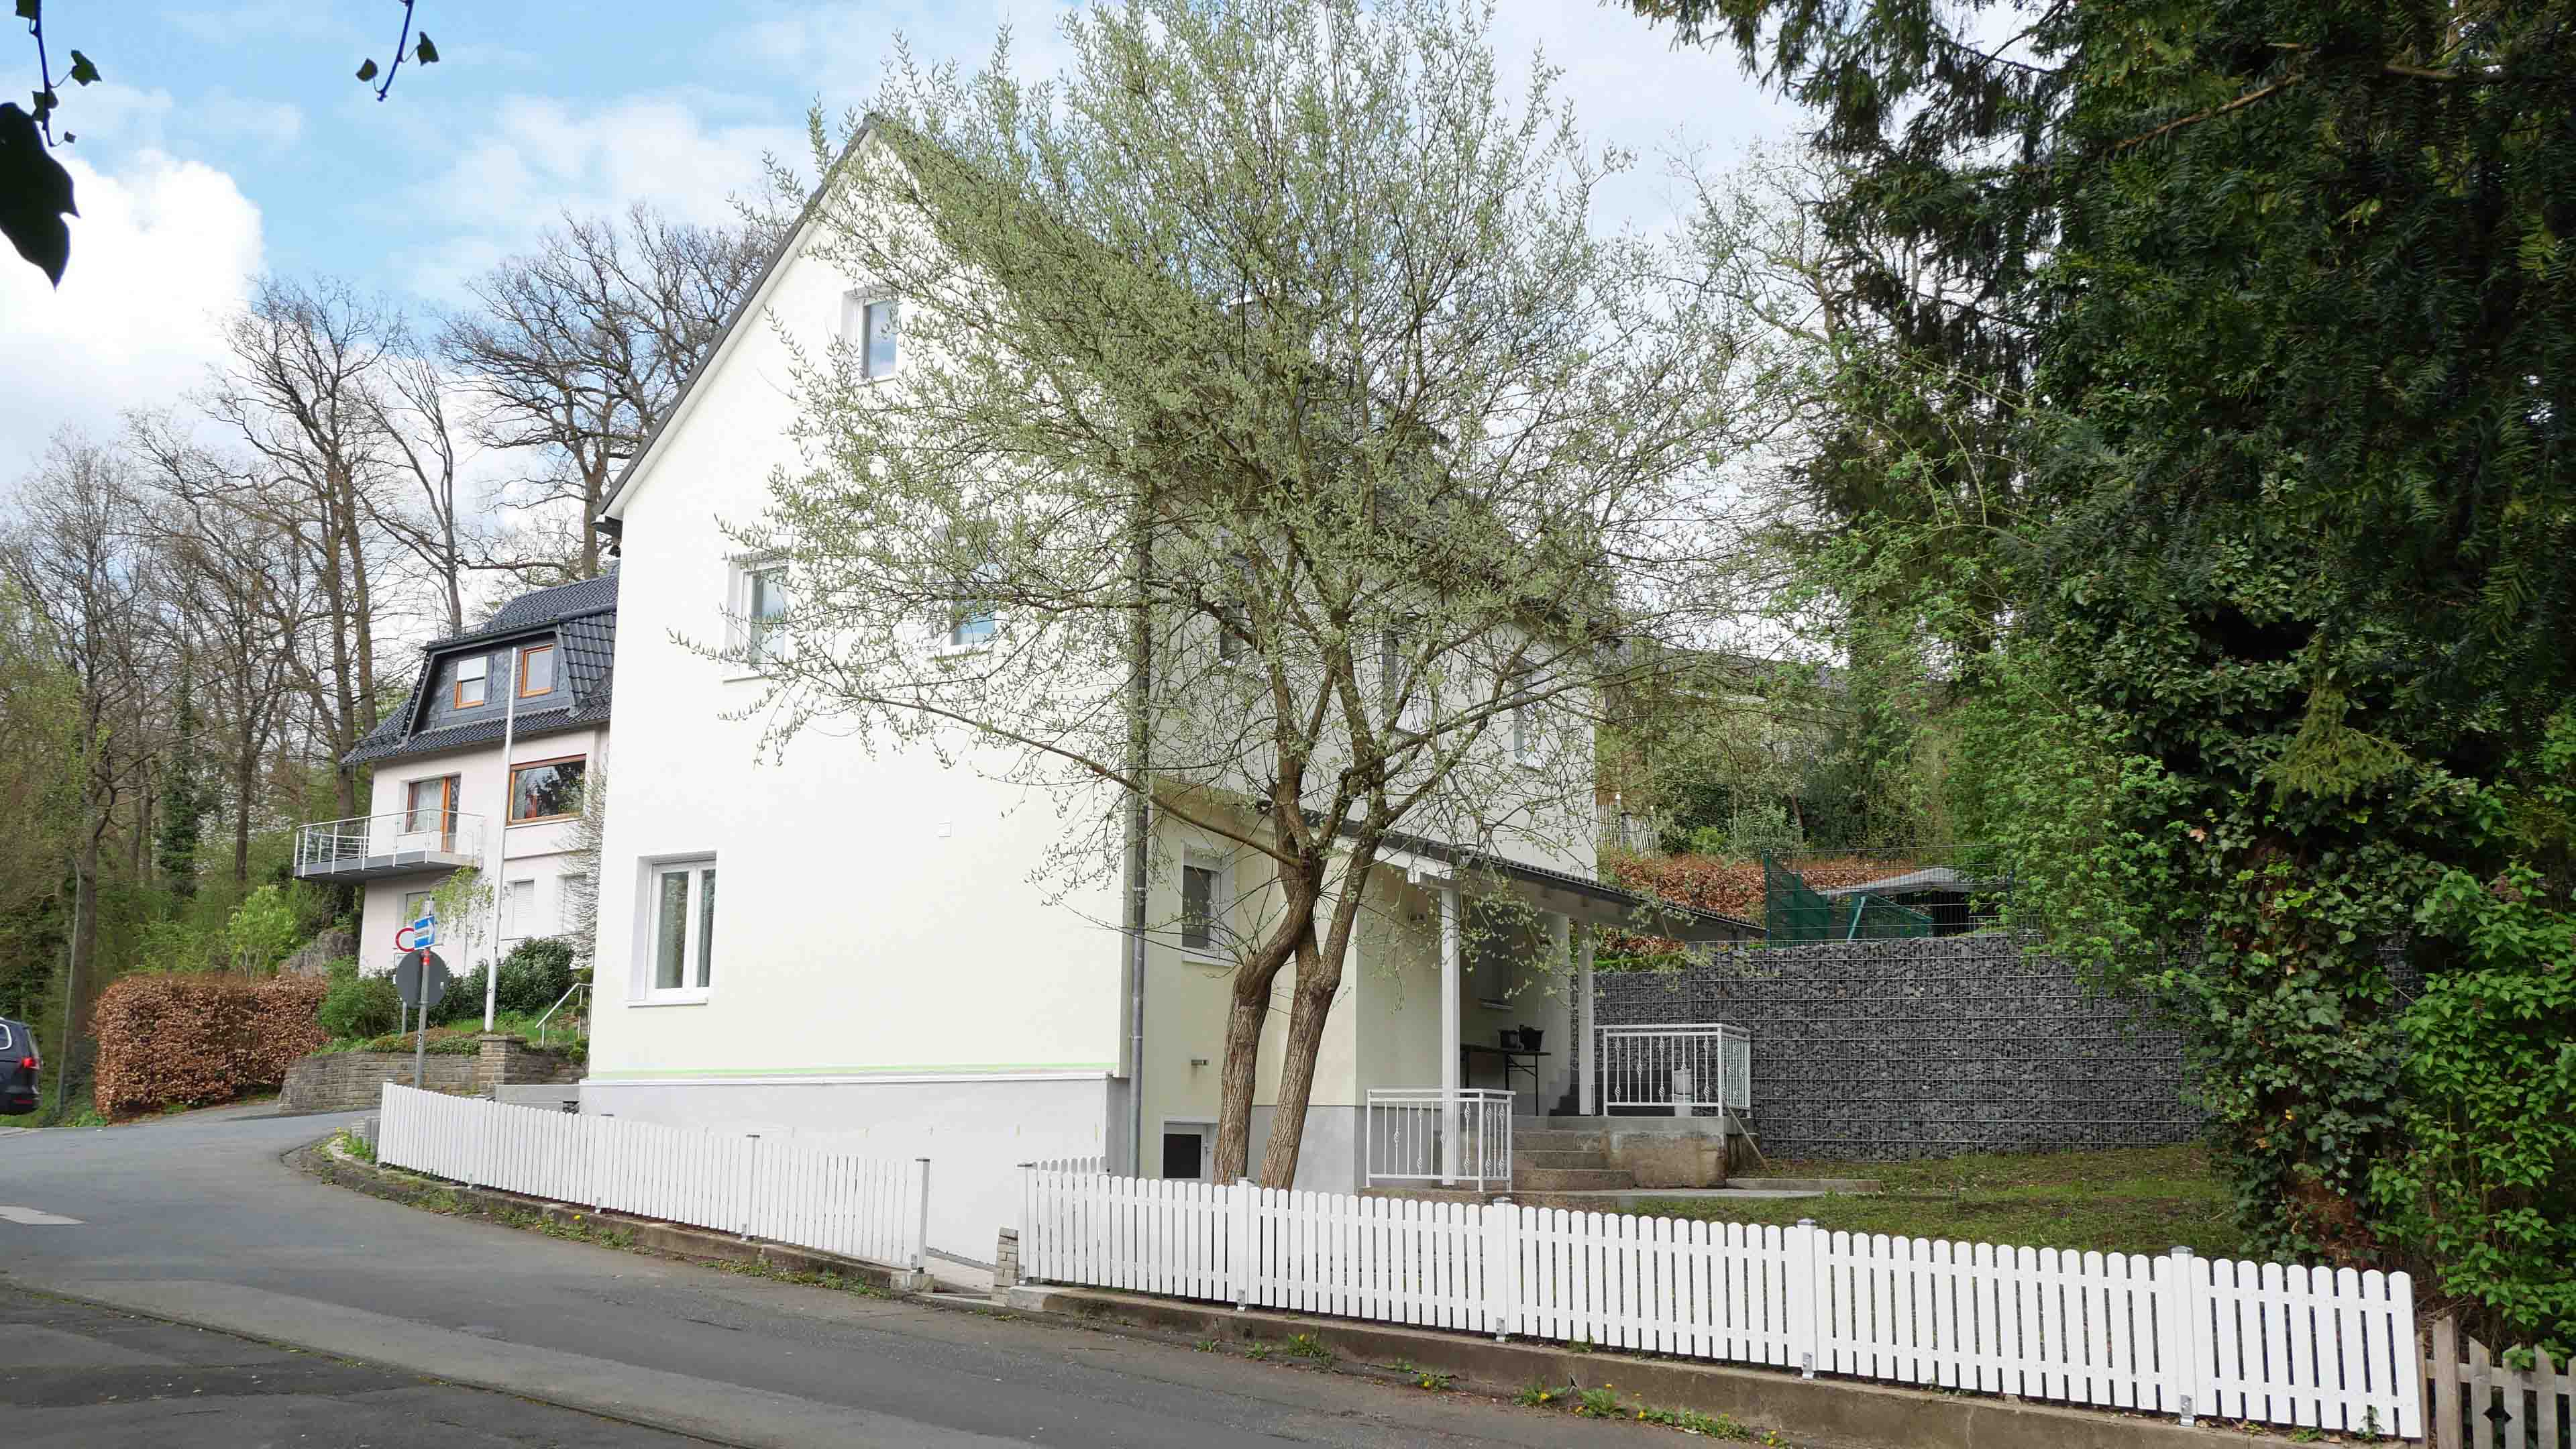 Morsbach: Komplett saniertes Wohnhaus im Zentrum, zentral in Morsbach gelegen